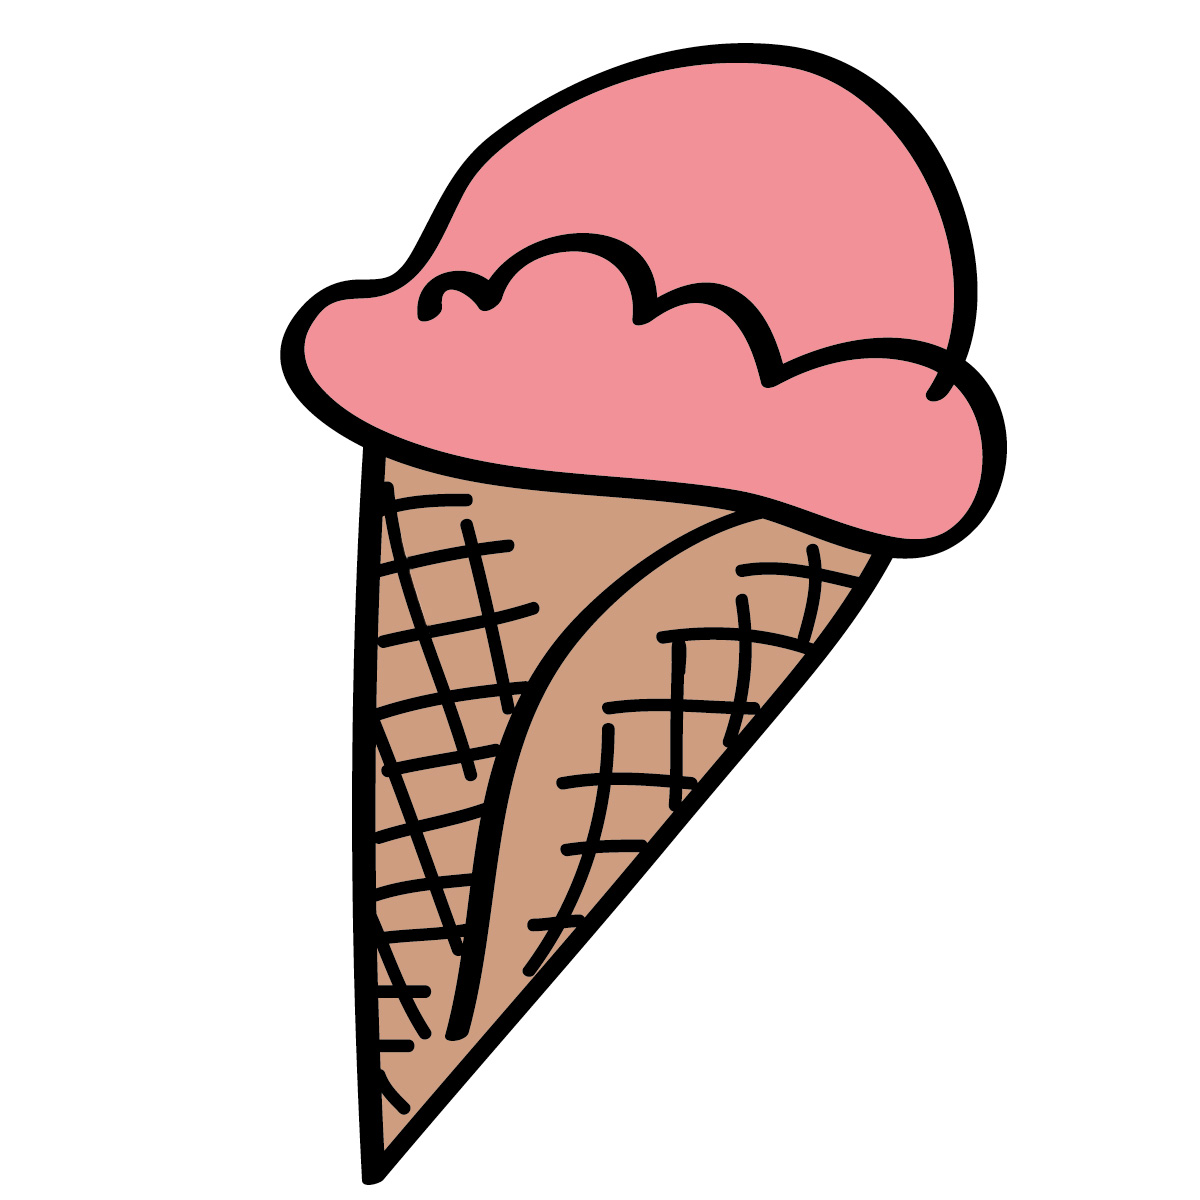 ice cream sundae images clip art - photo #37